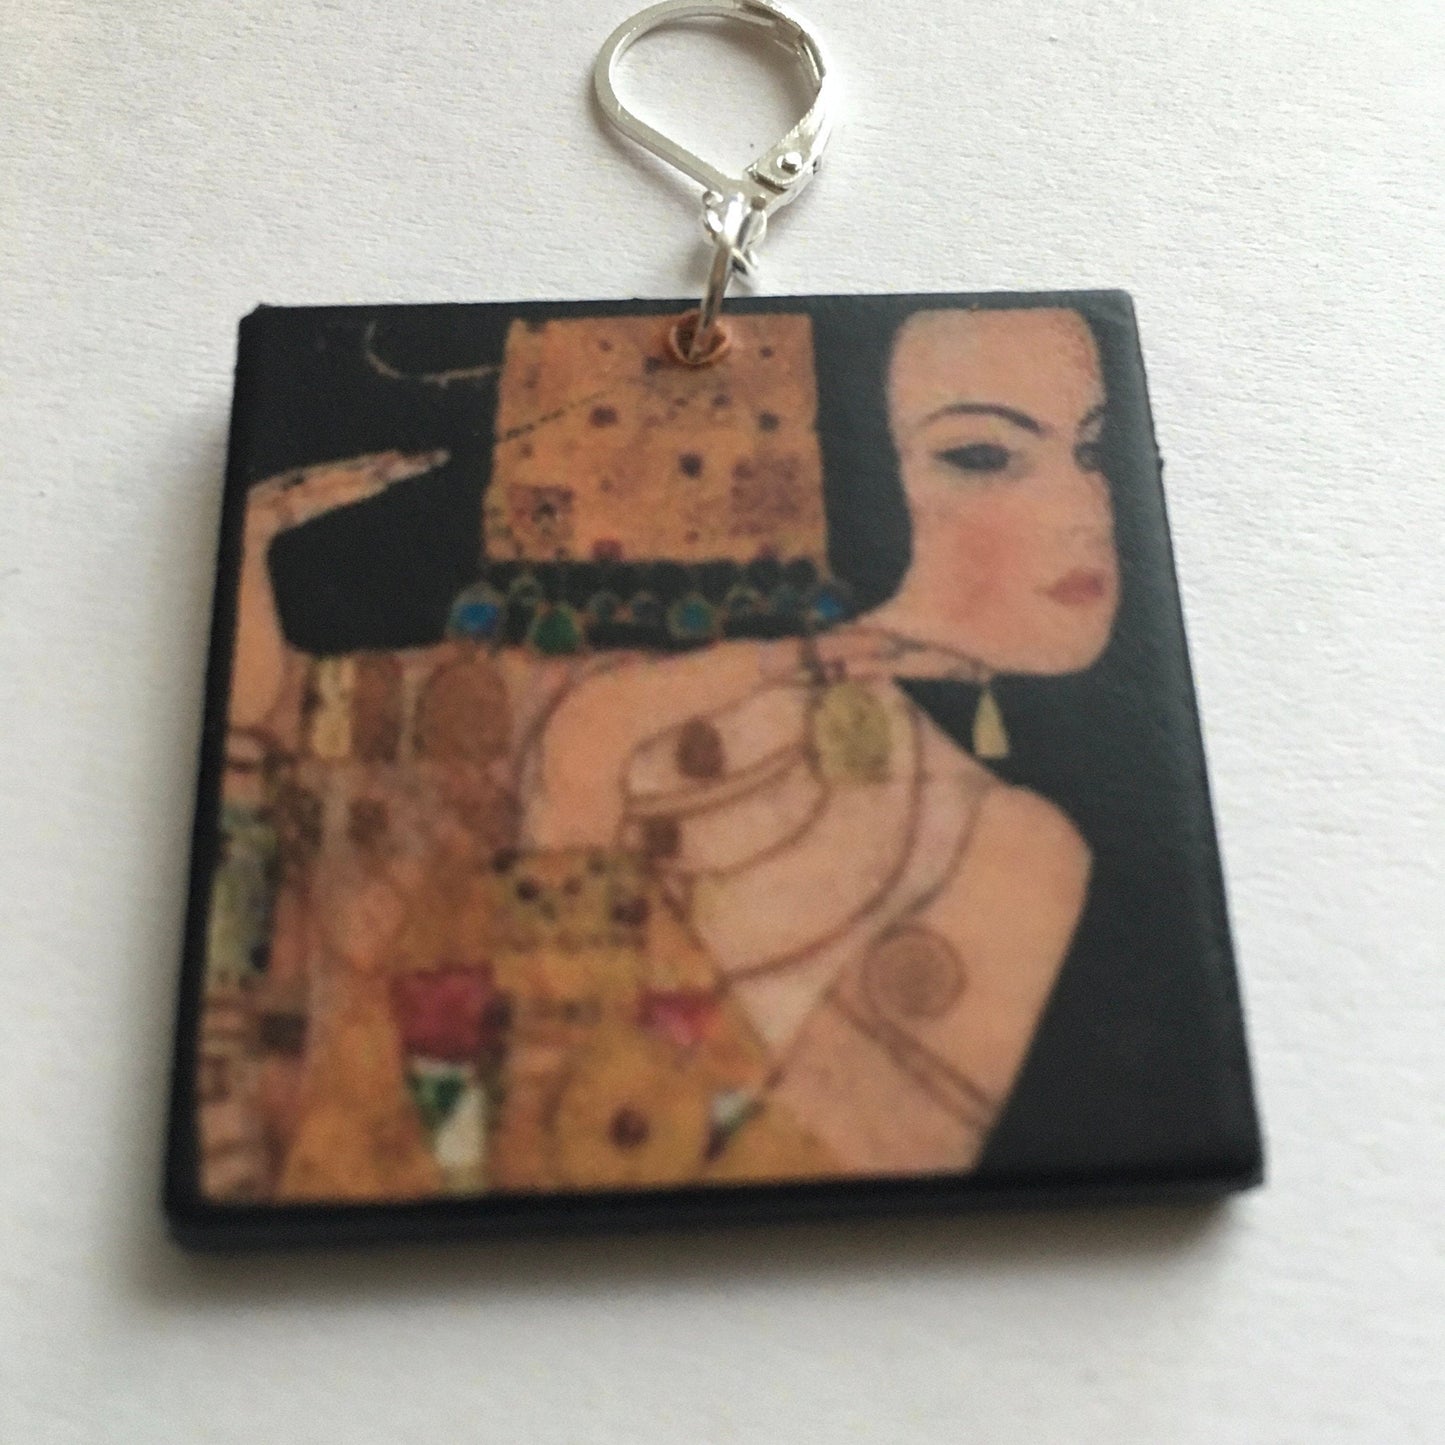 Gustav Klimt art earrings, aesthetic earrings. Mother day gift